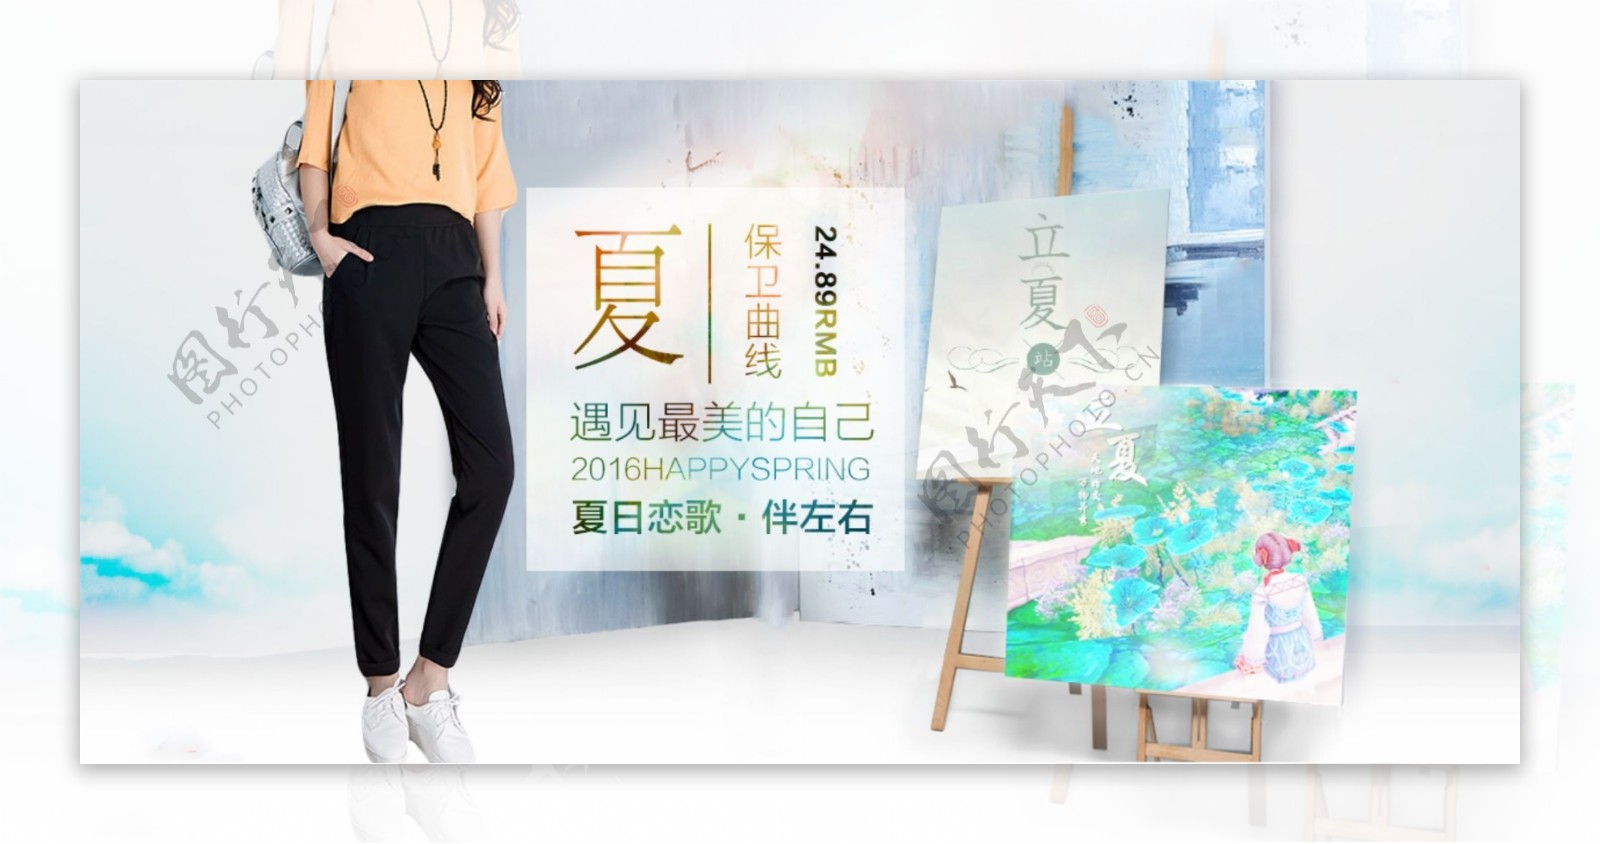 淘宝夏季长裤促销海报设计PSD素材